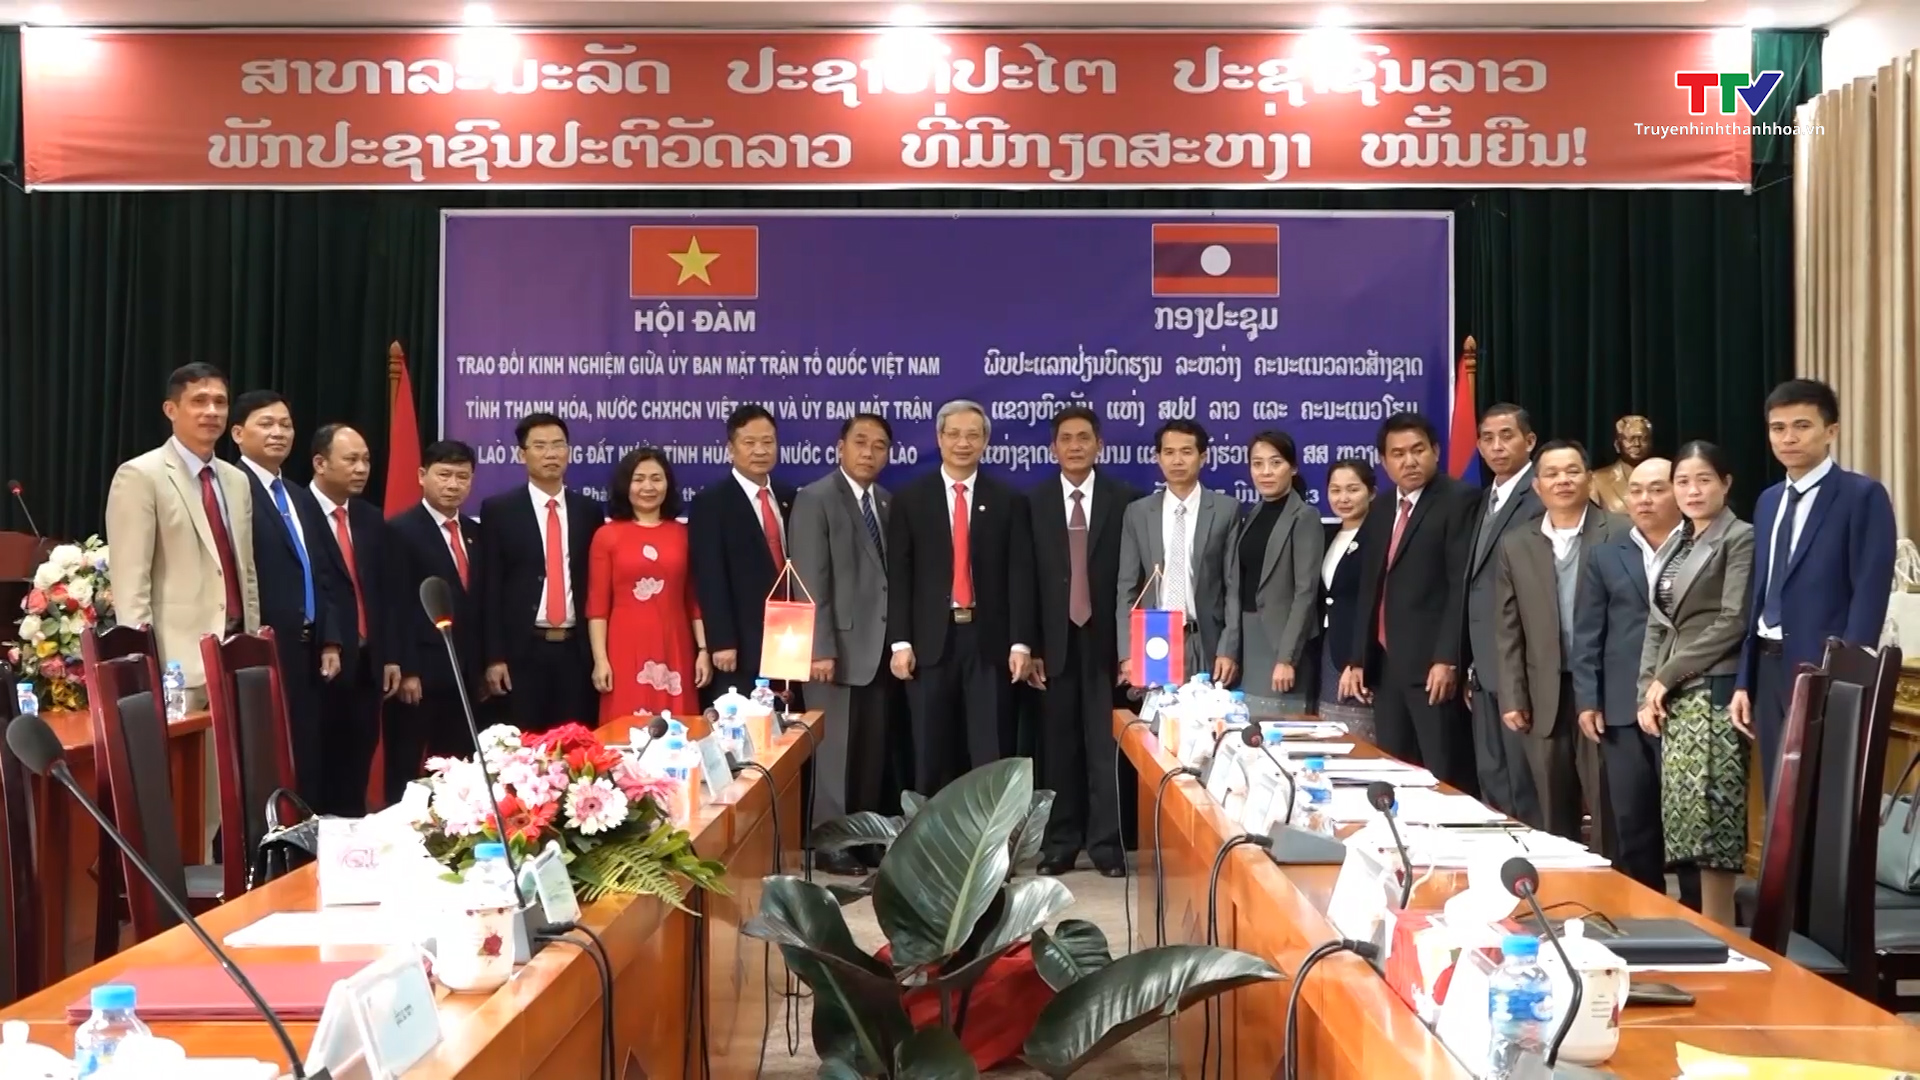 Đoàn đại biểu Ủy ban MTTQ Việt Nam tỉnh Thanh Hóa thăm, làm việc tại Ủy ban Mặt trận Lào xây dựng đất nước tỉnh Hủa Phăn - Ảnh 1.